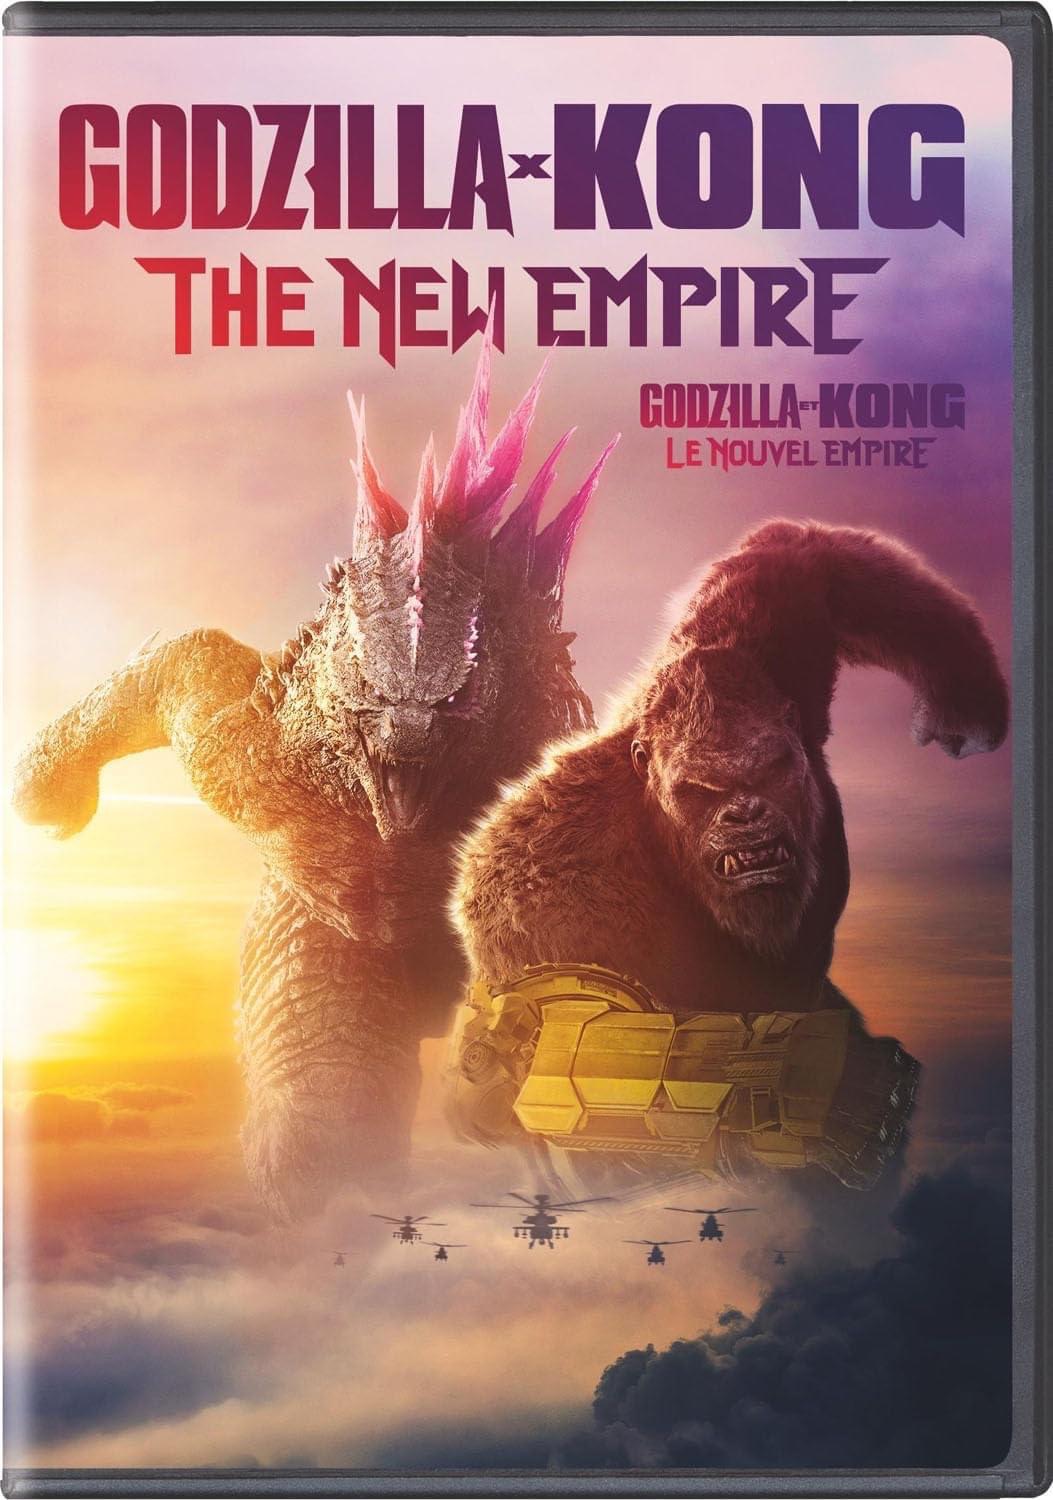 Godzilla x Kong DVD Box Art